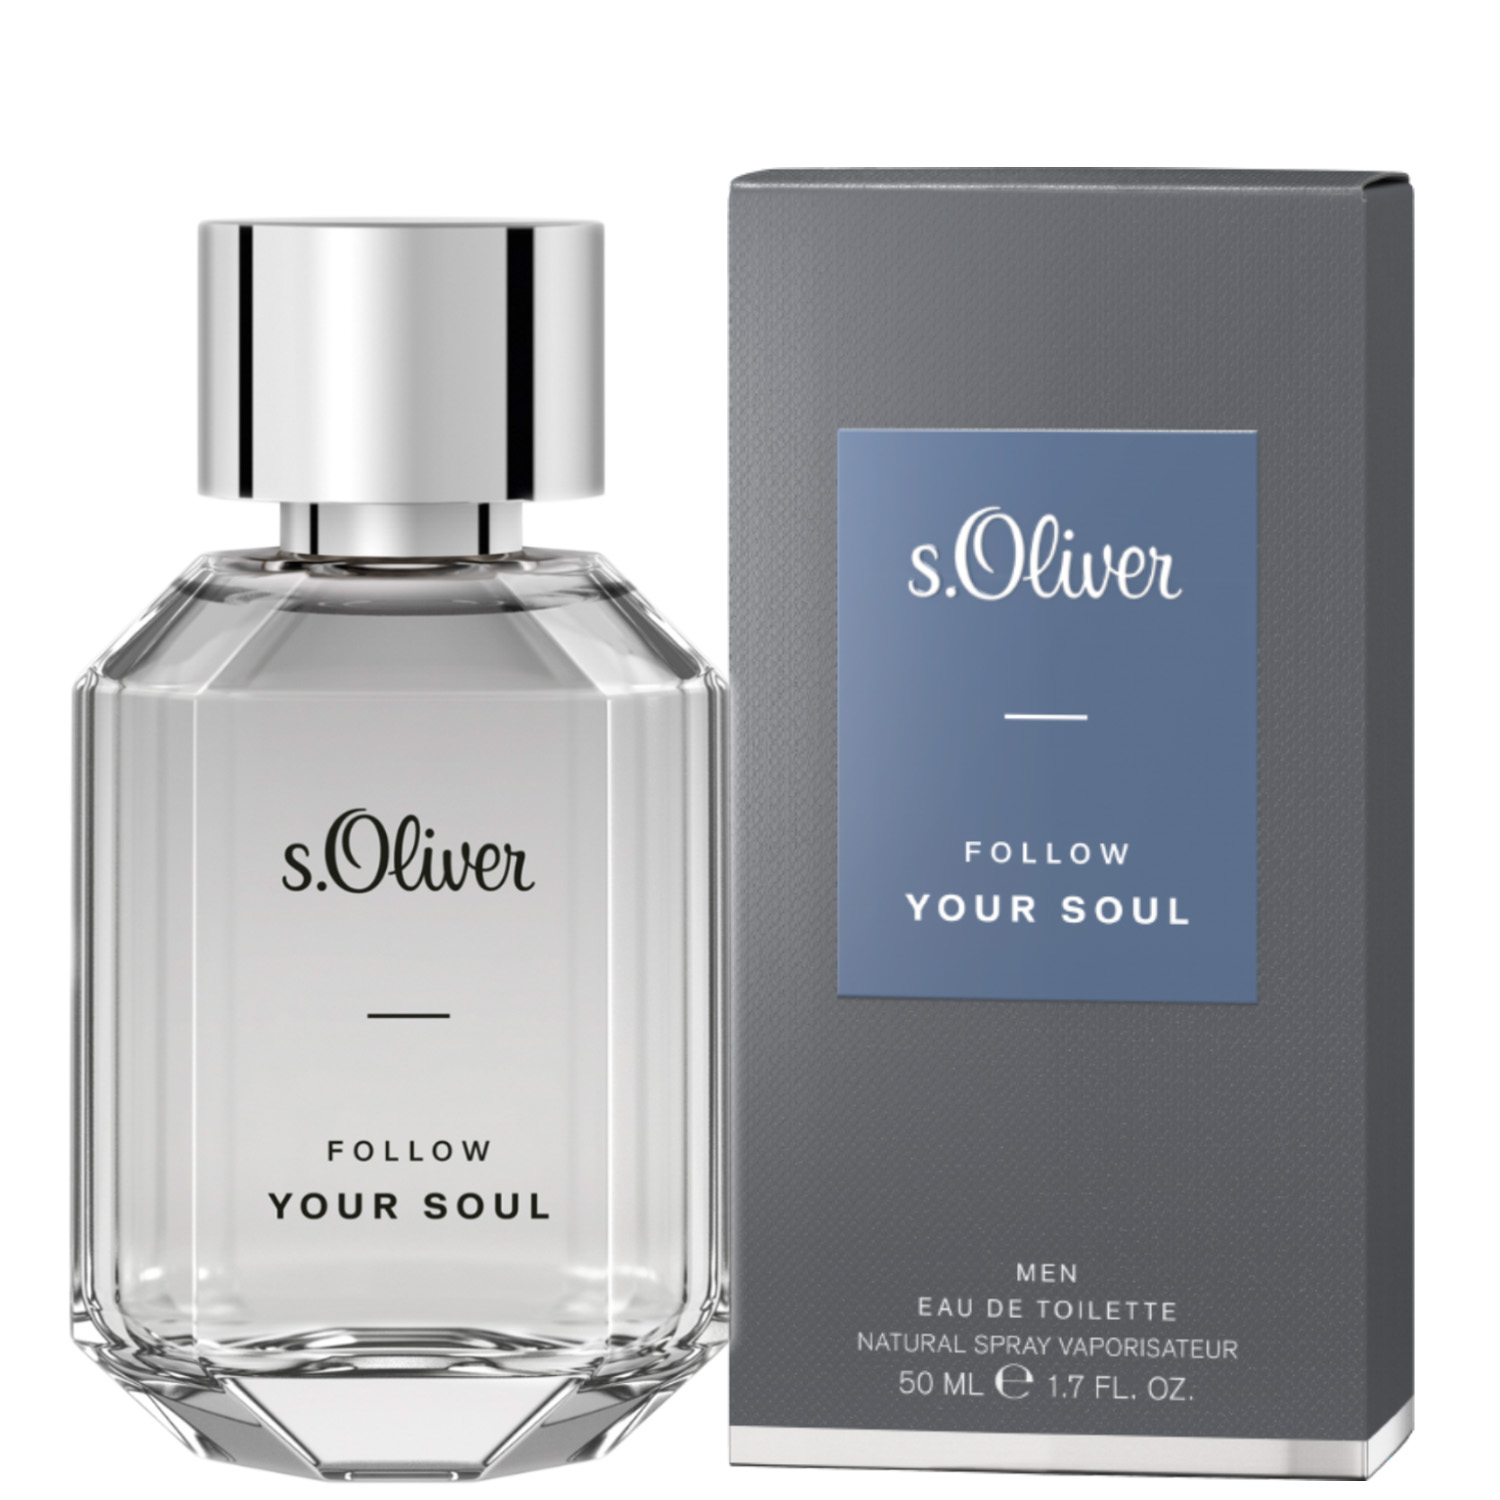 S.Oliver Follow Your Soul Men Eau de Toilette 50ml